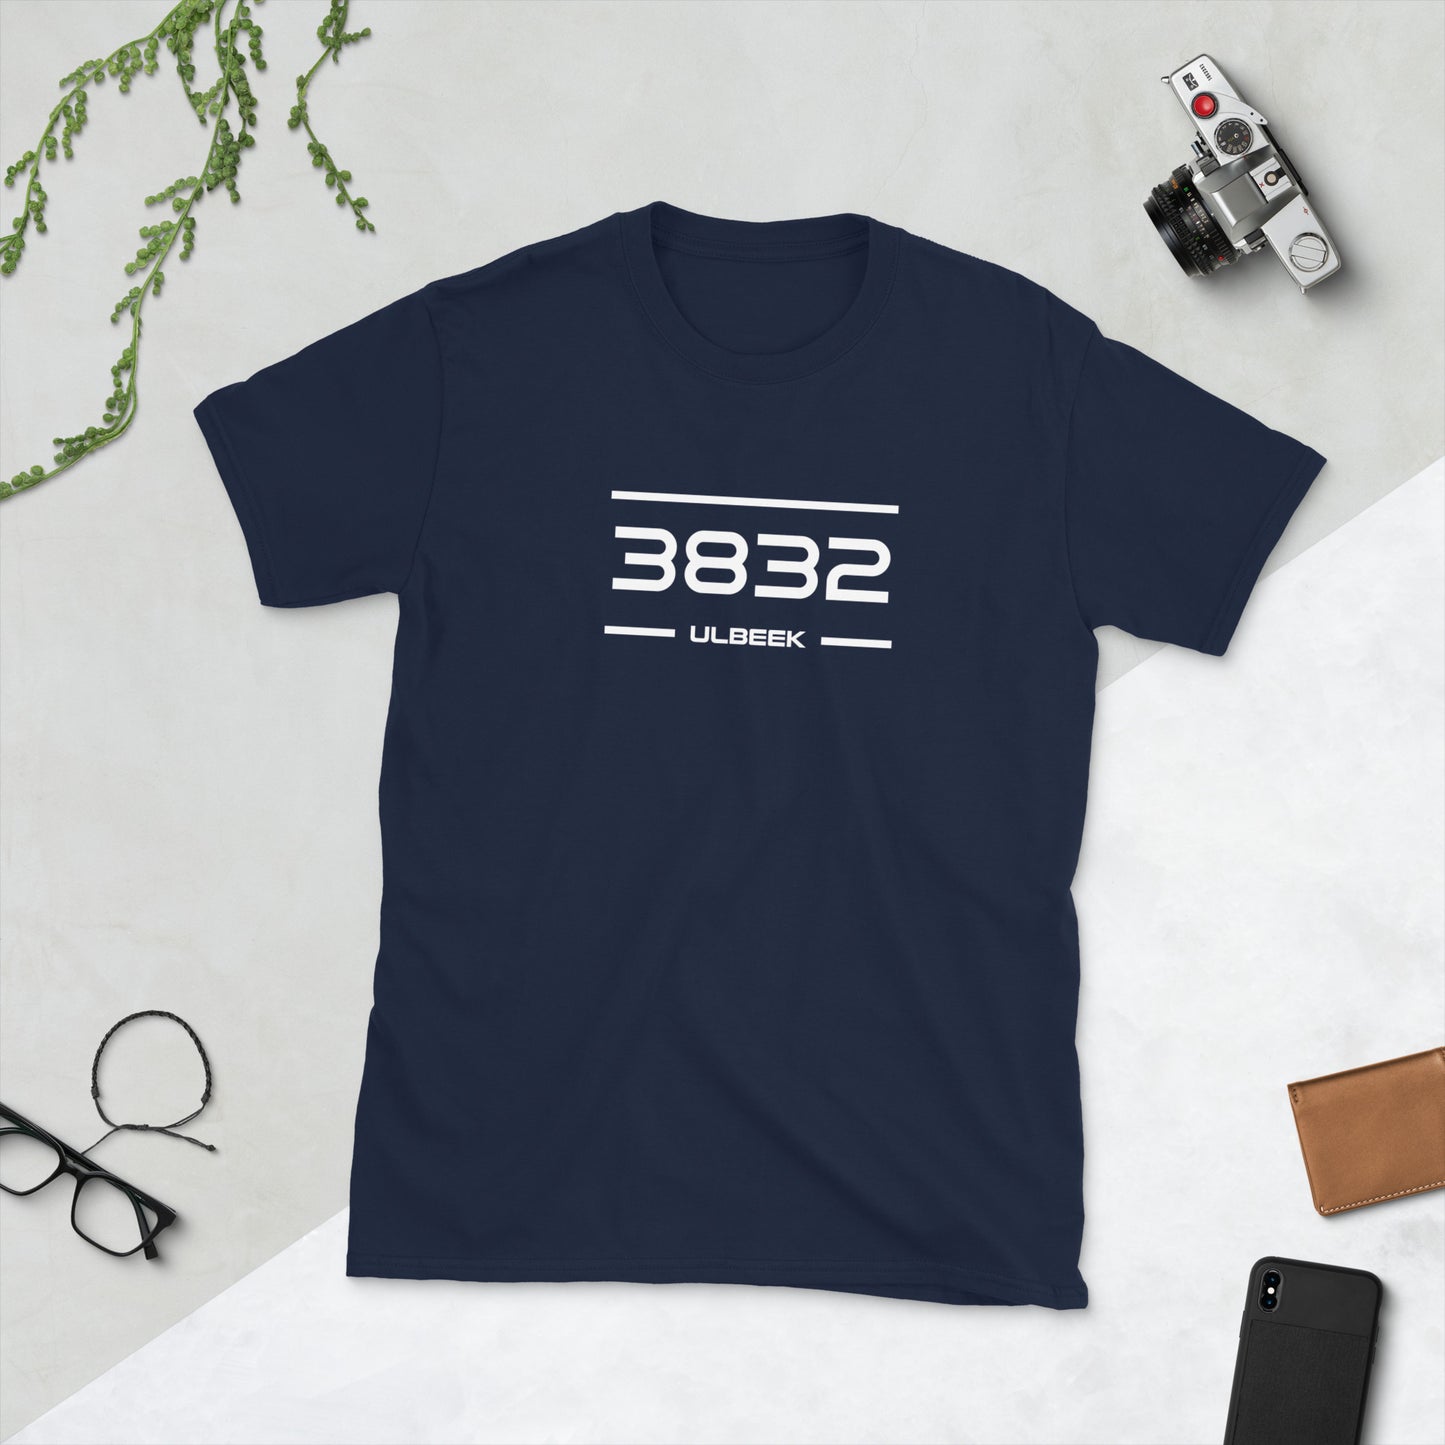 Tshirt - 3832 - Ulbeek